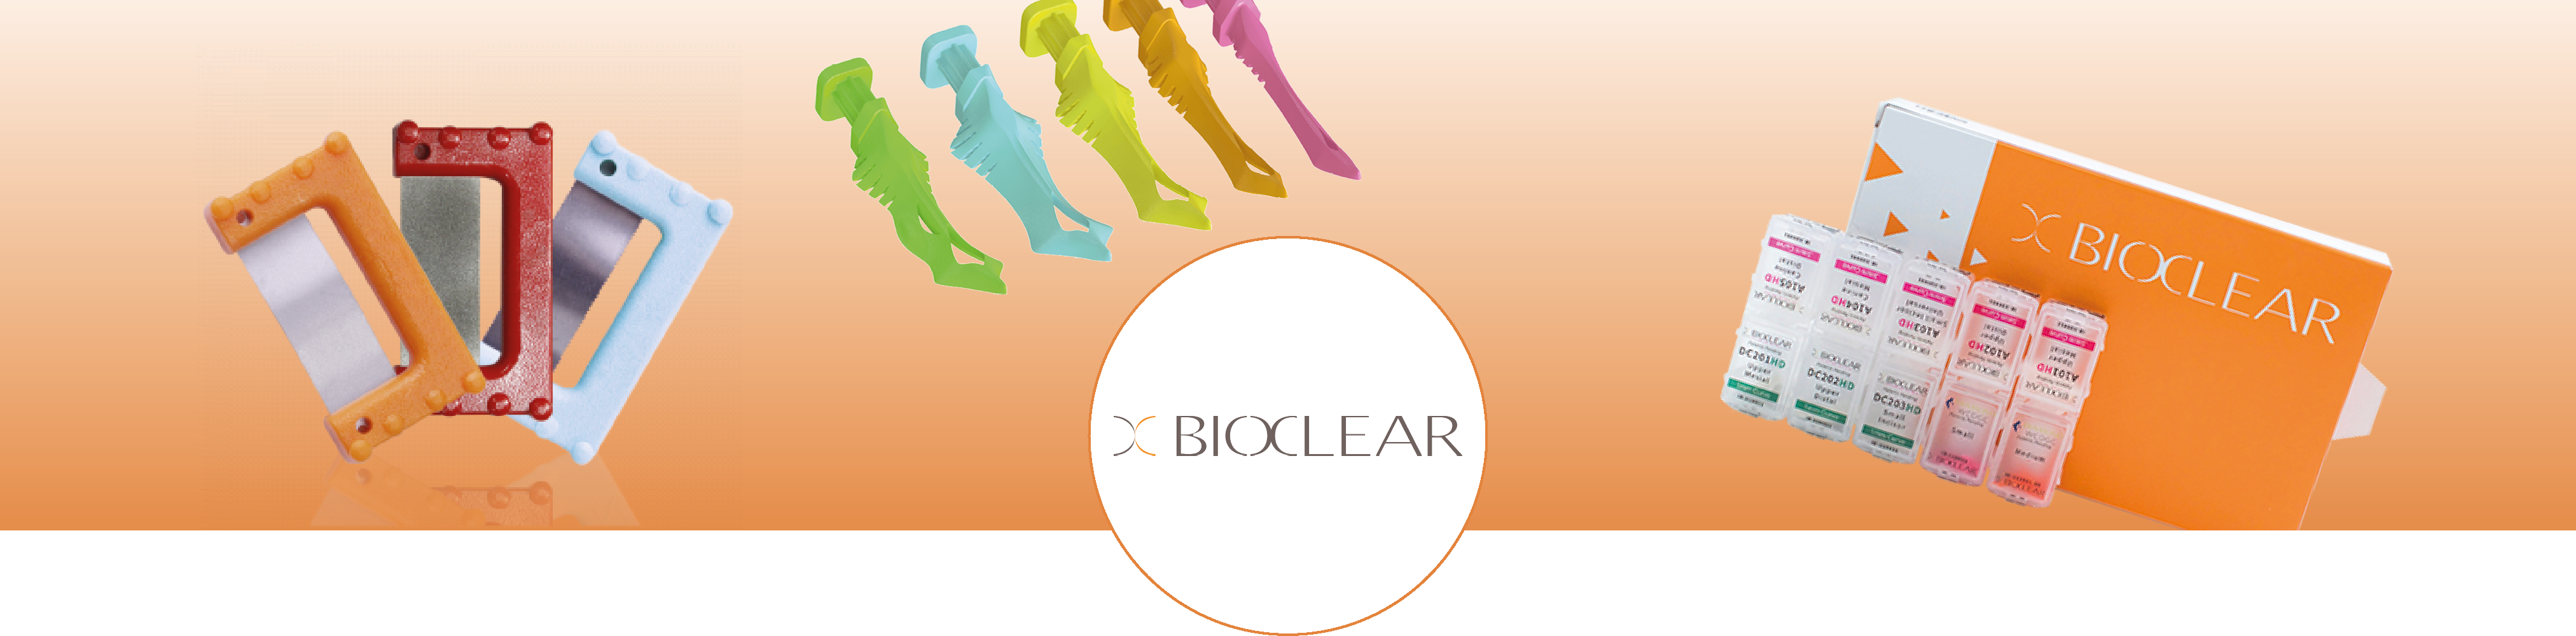 banner_bioclear